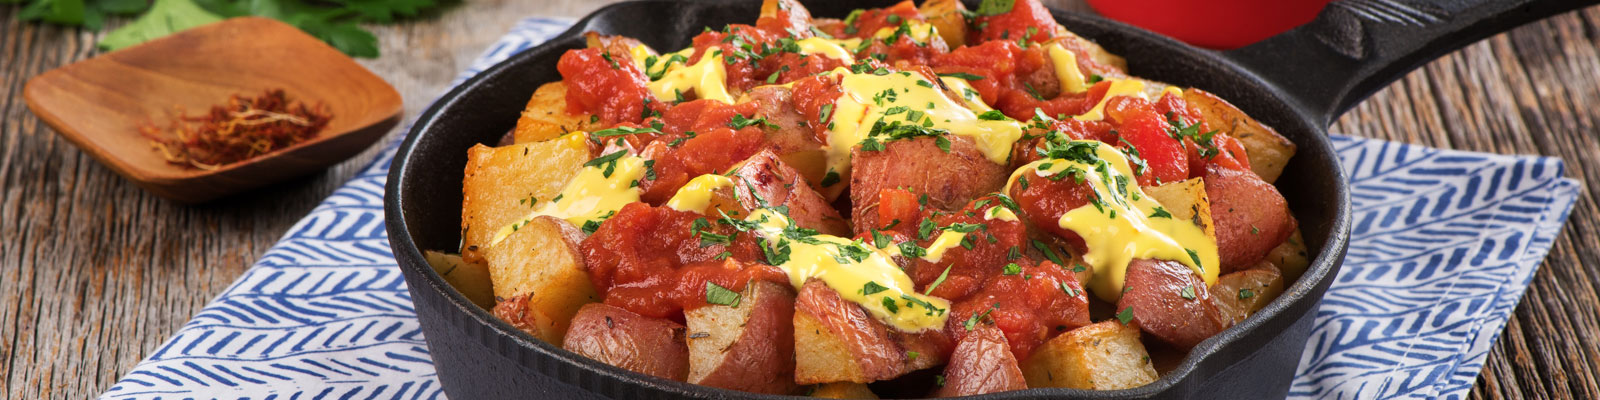 tomato-potatas-bravas-with-.jpg